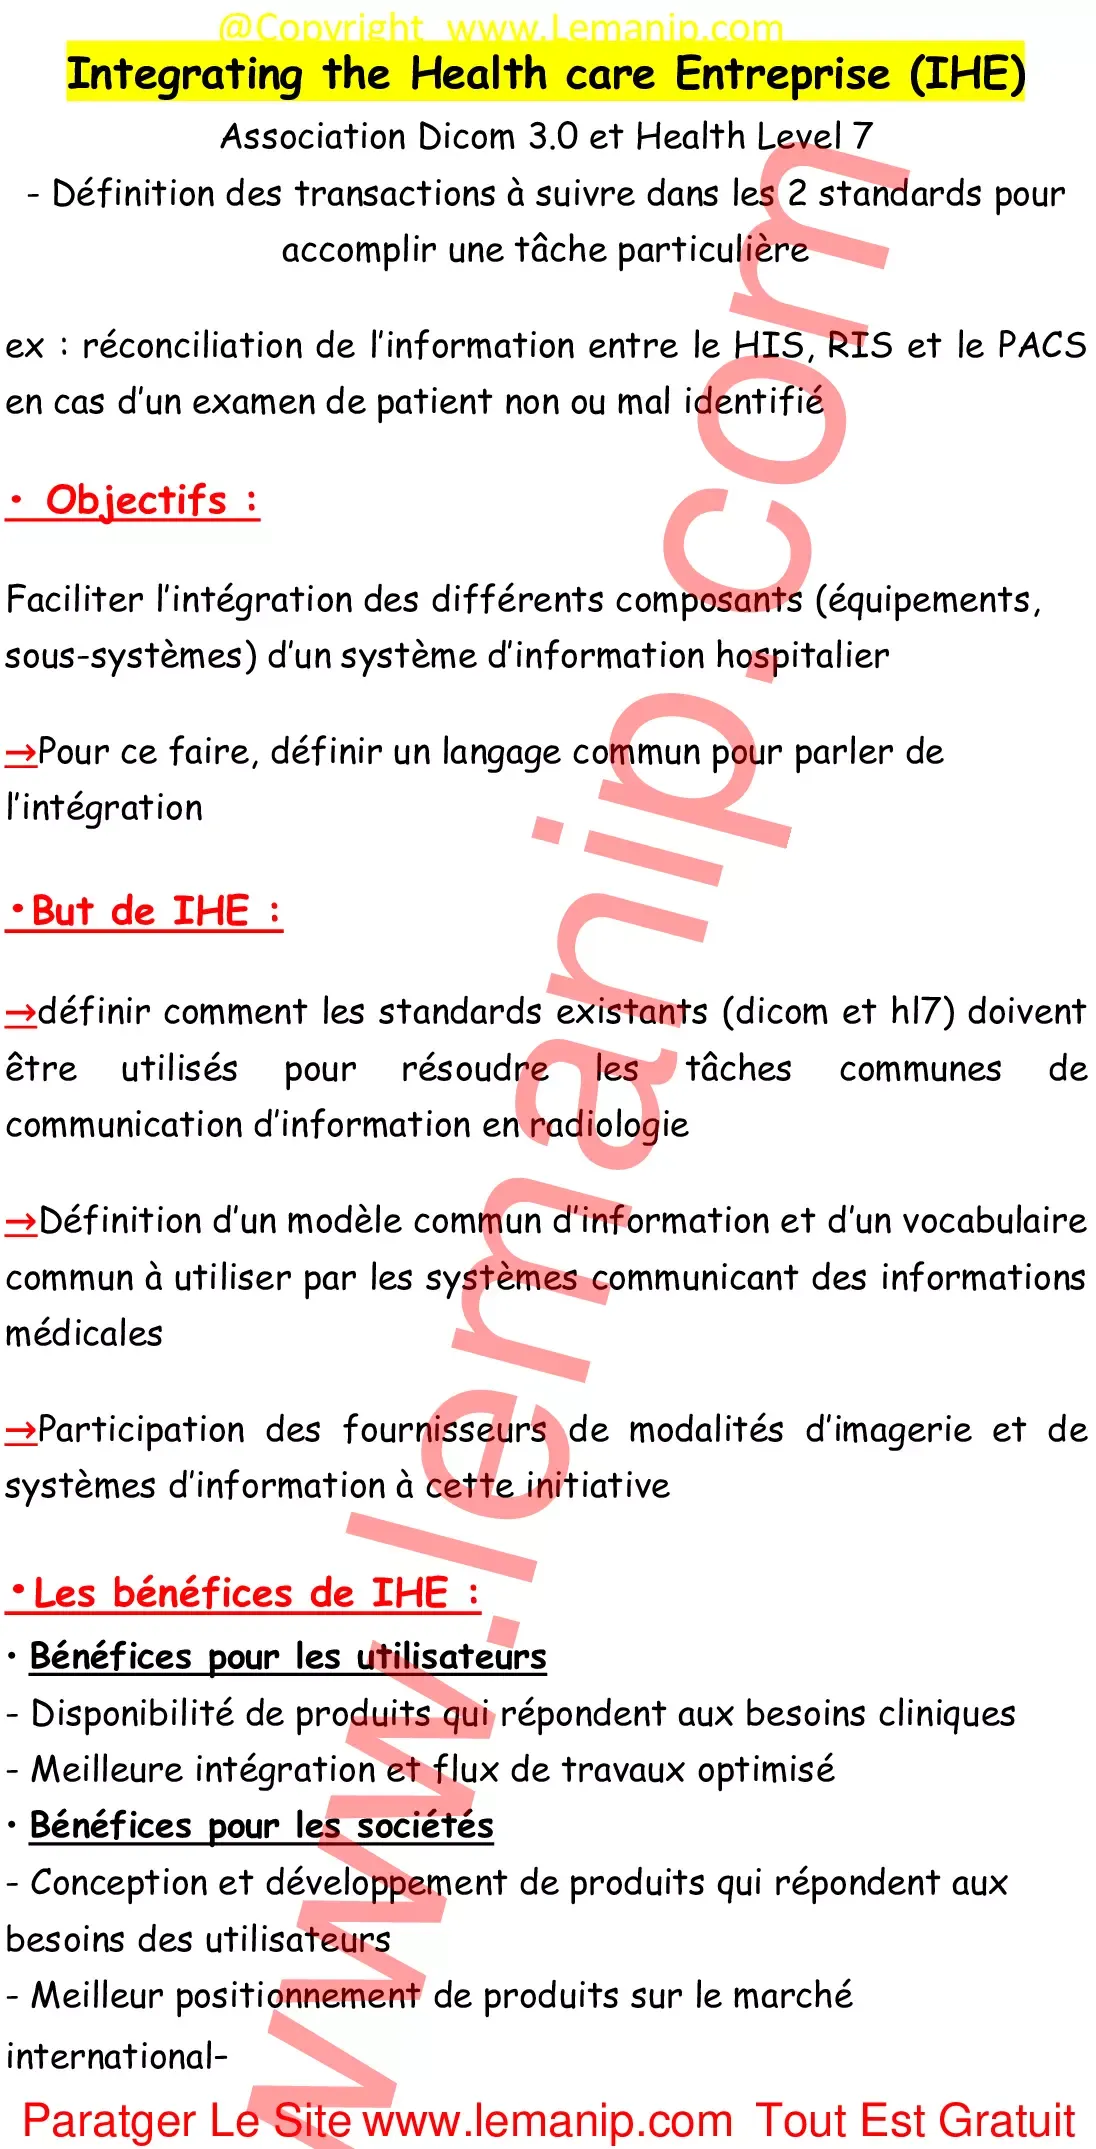 Résumé Cour43 Du Module Réseau De Communication Et Archivage radiologique 3